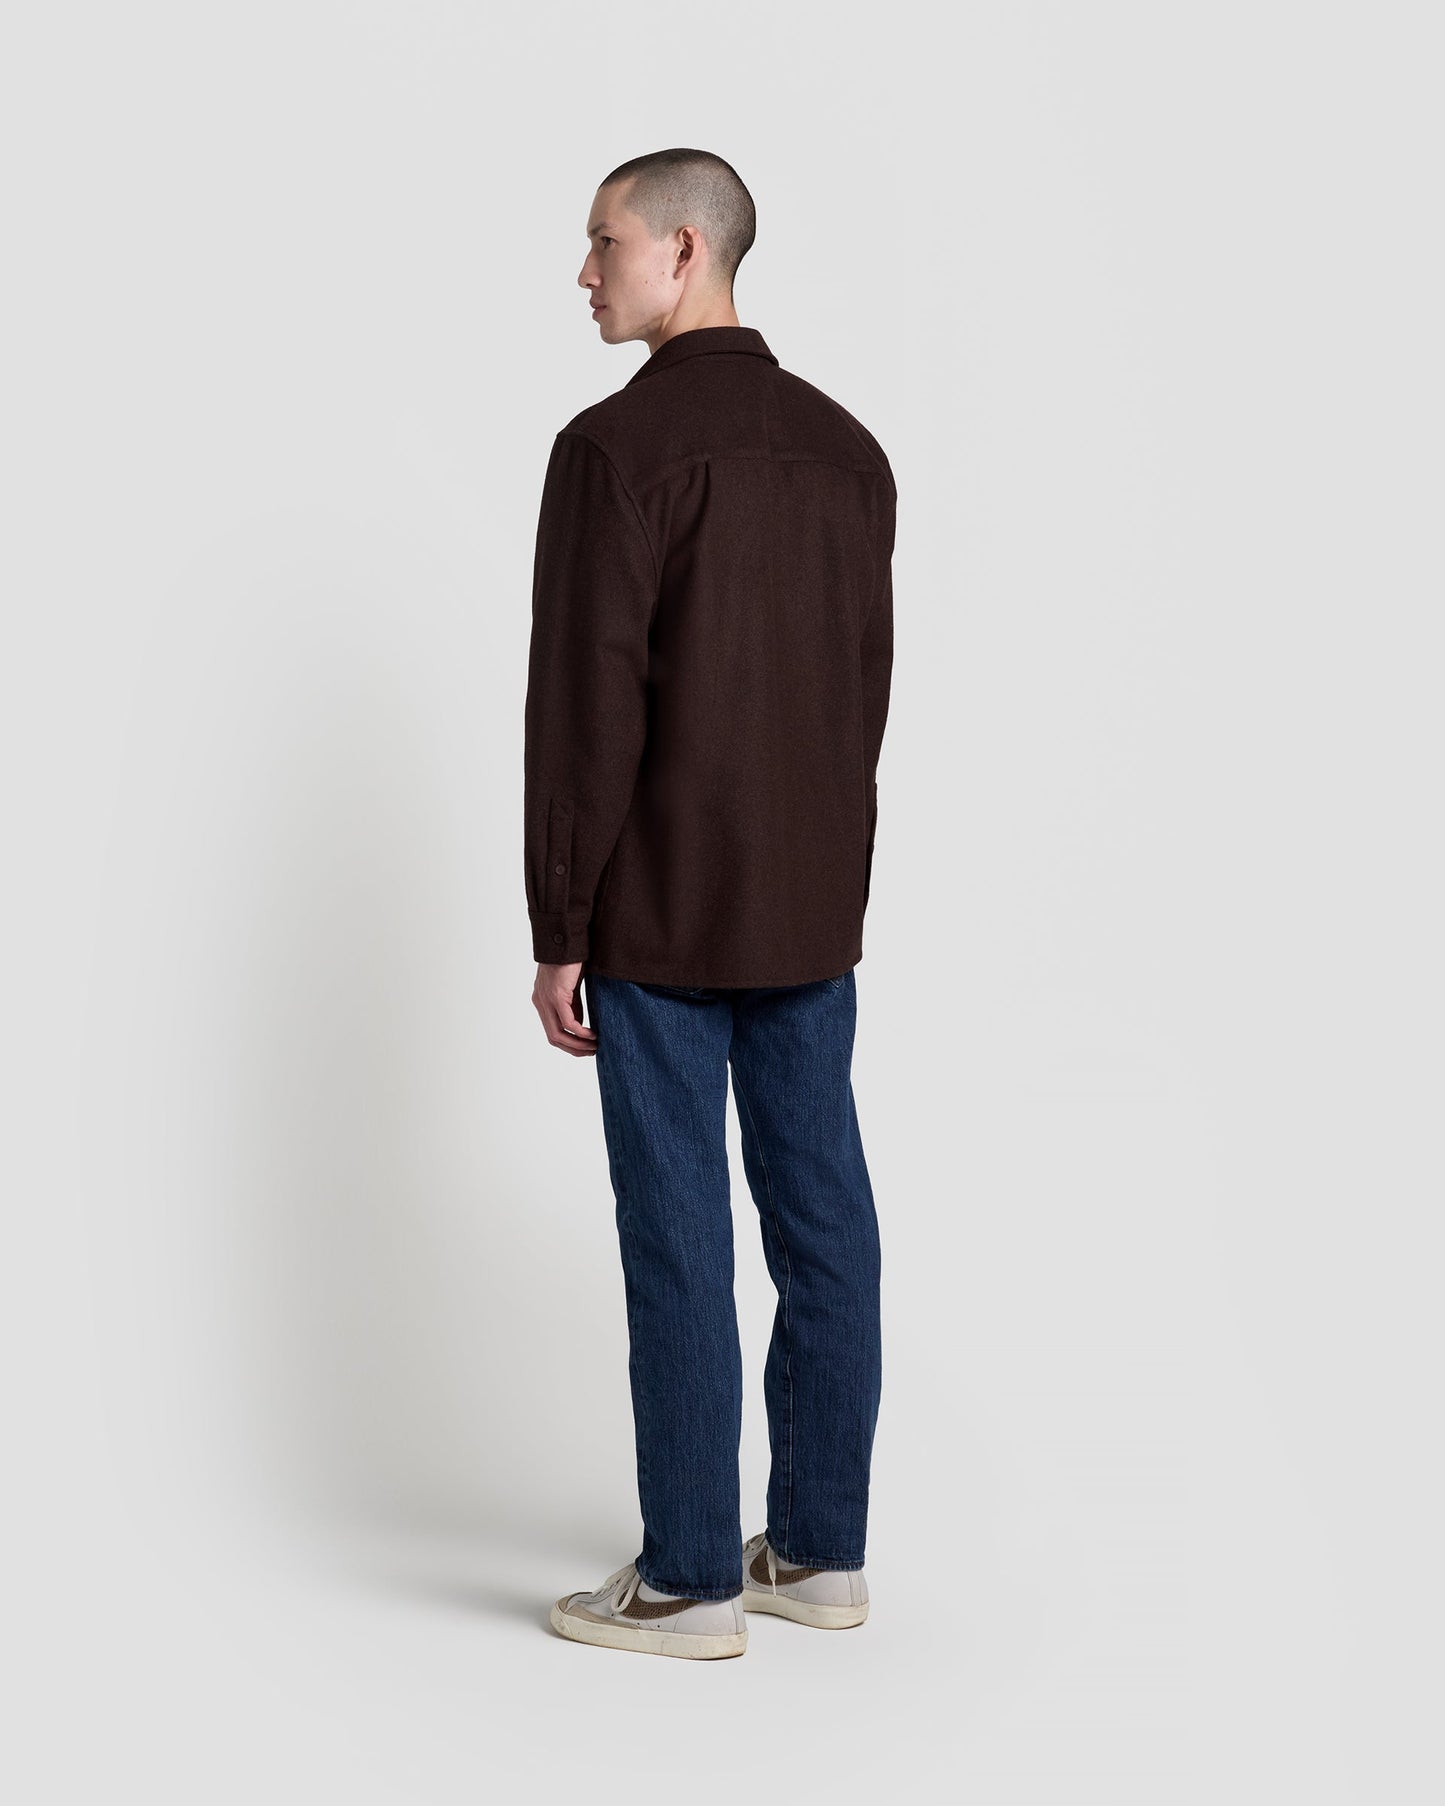 Speckled Brown Shirt Jacket